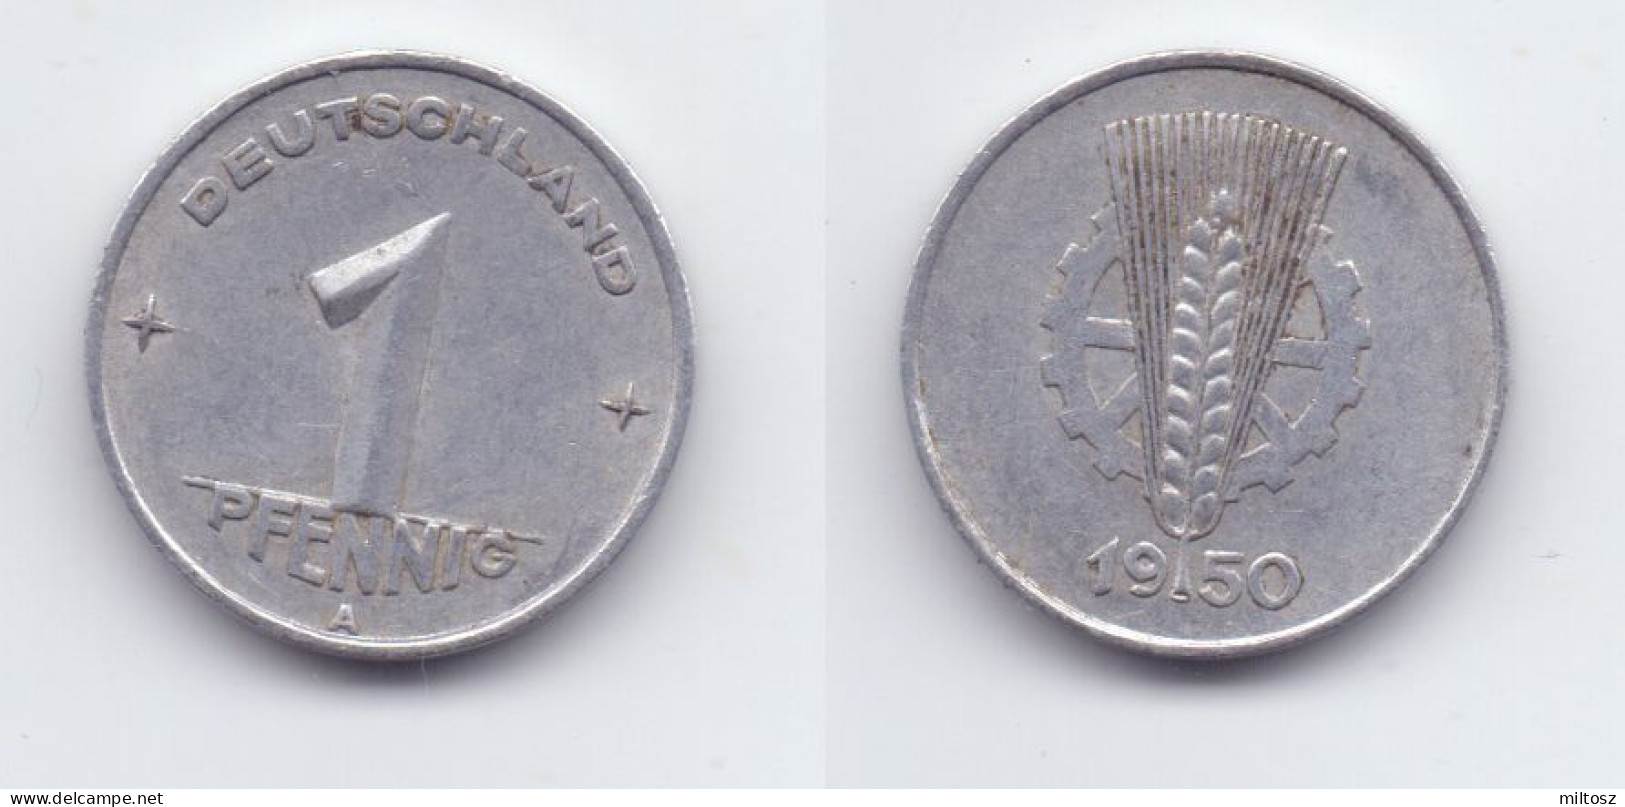 Germany DDR 1 Pfennig 1950 A - 1 Pfennig